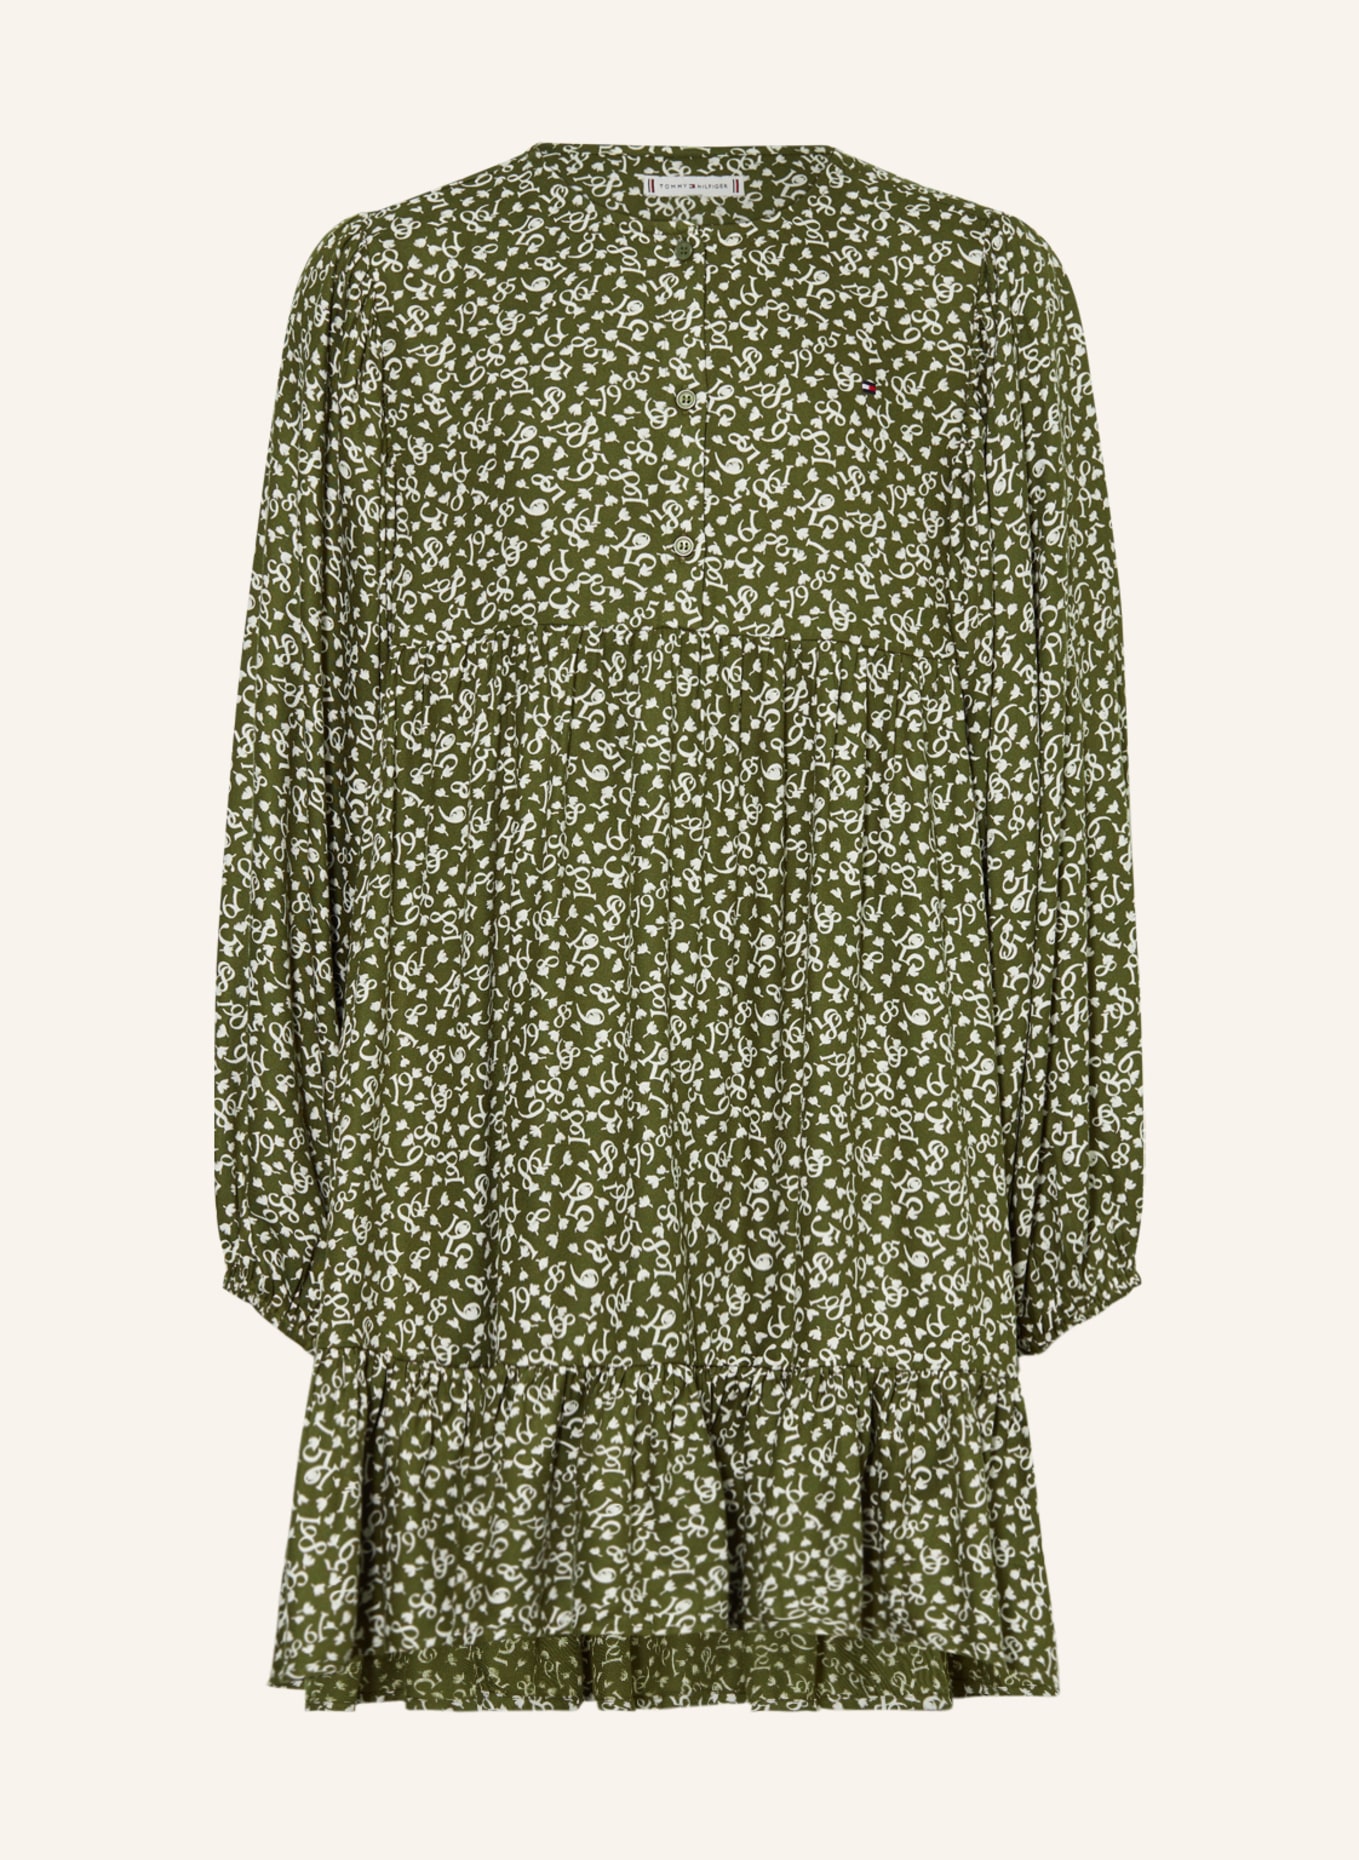 TOMMY HILFIGER Kleid, Farbe: OLIV/ WEISS (Bild 1)